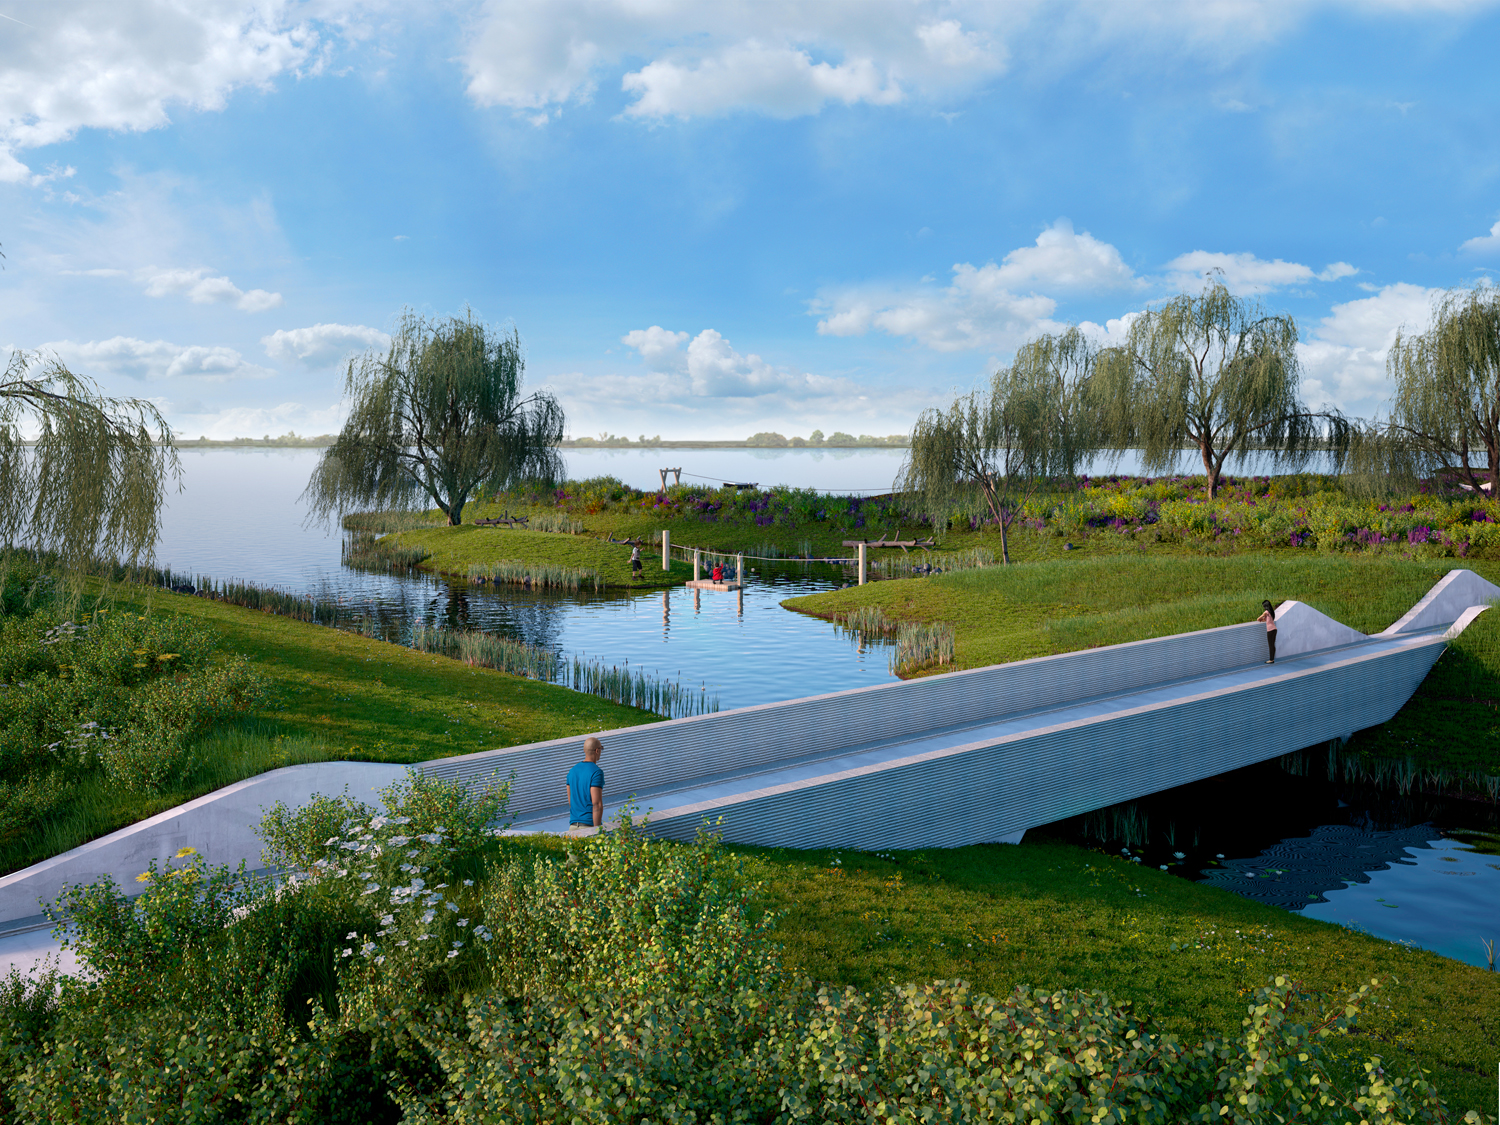 Meerstad krijgt misschien wel het mooiste park van Groningen